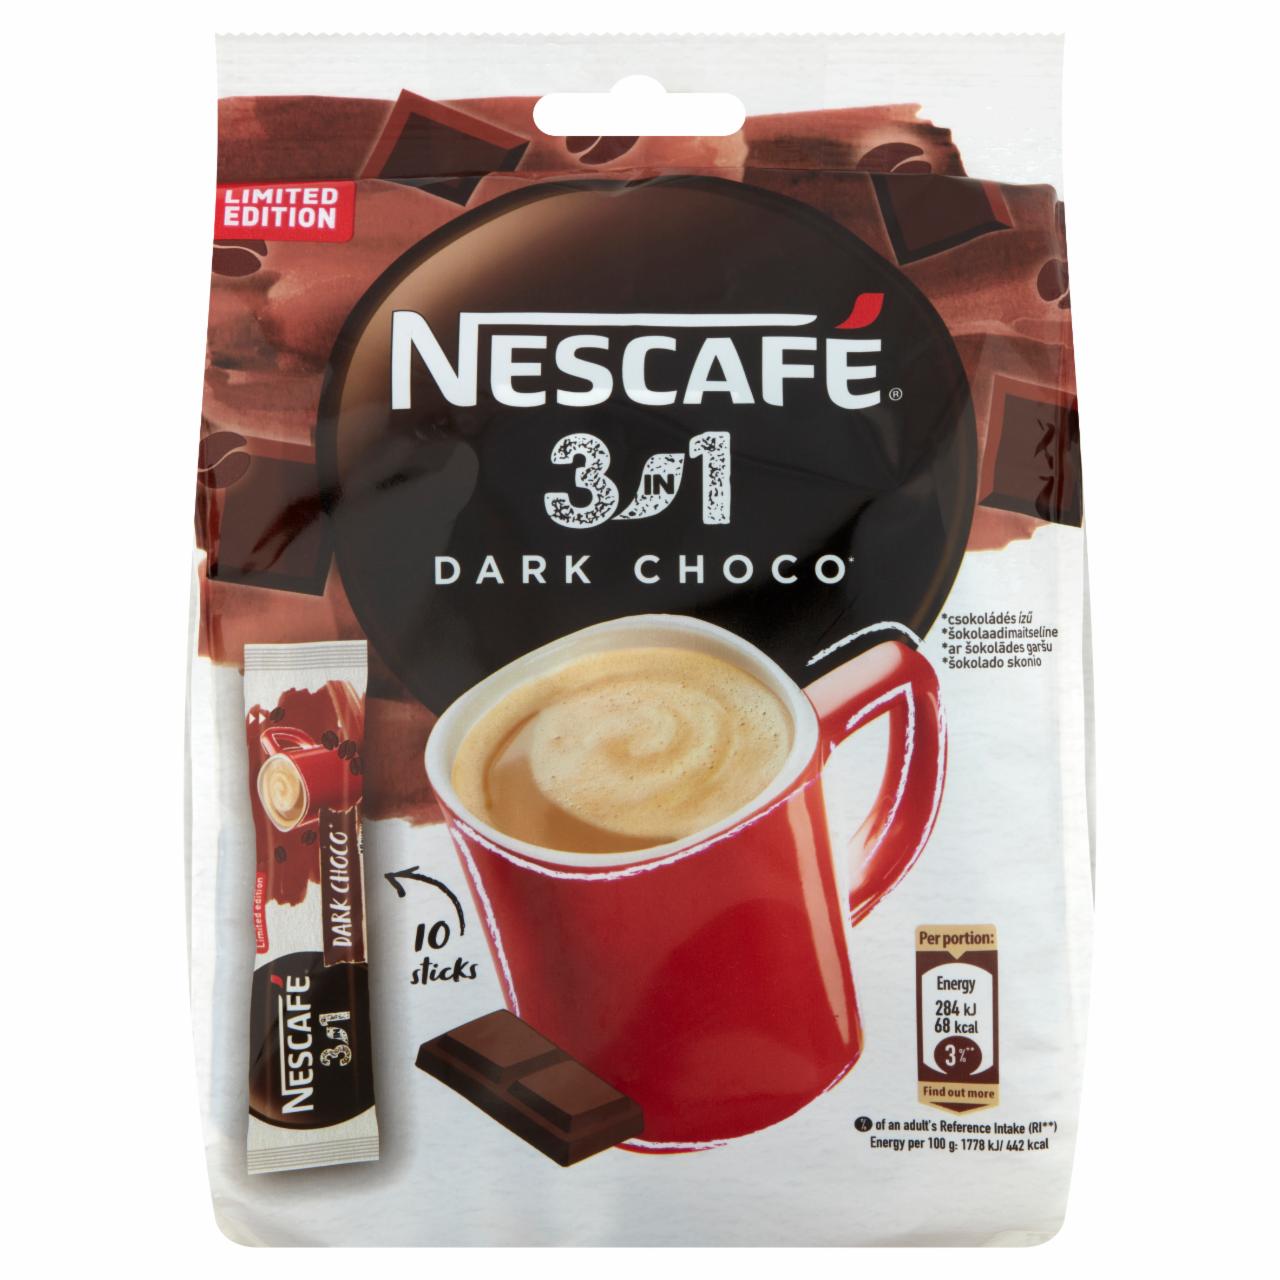 Képek - Nescafé 3in1 Dark Choco csokoládés ízű azonnal oldódó kávéspecialitás 10 x 16 g (160 g)